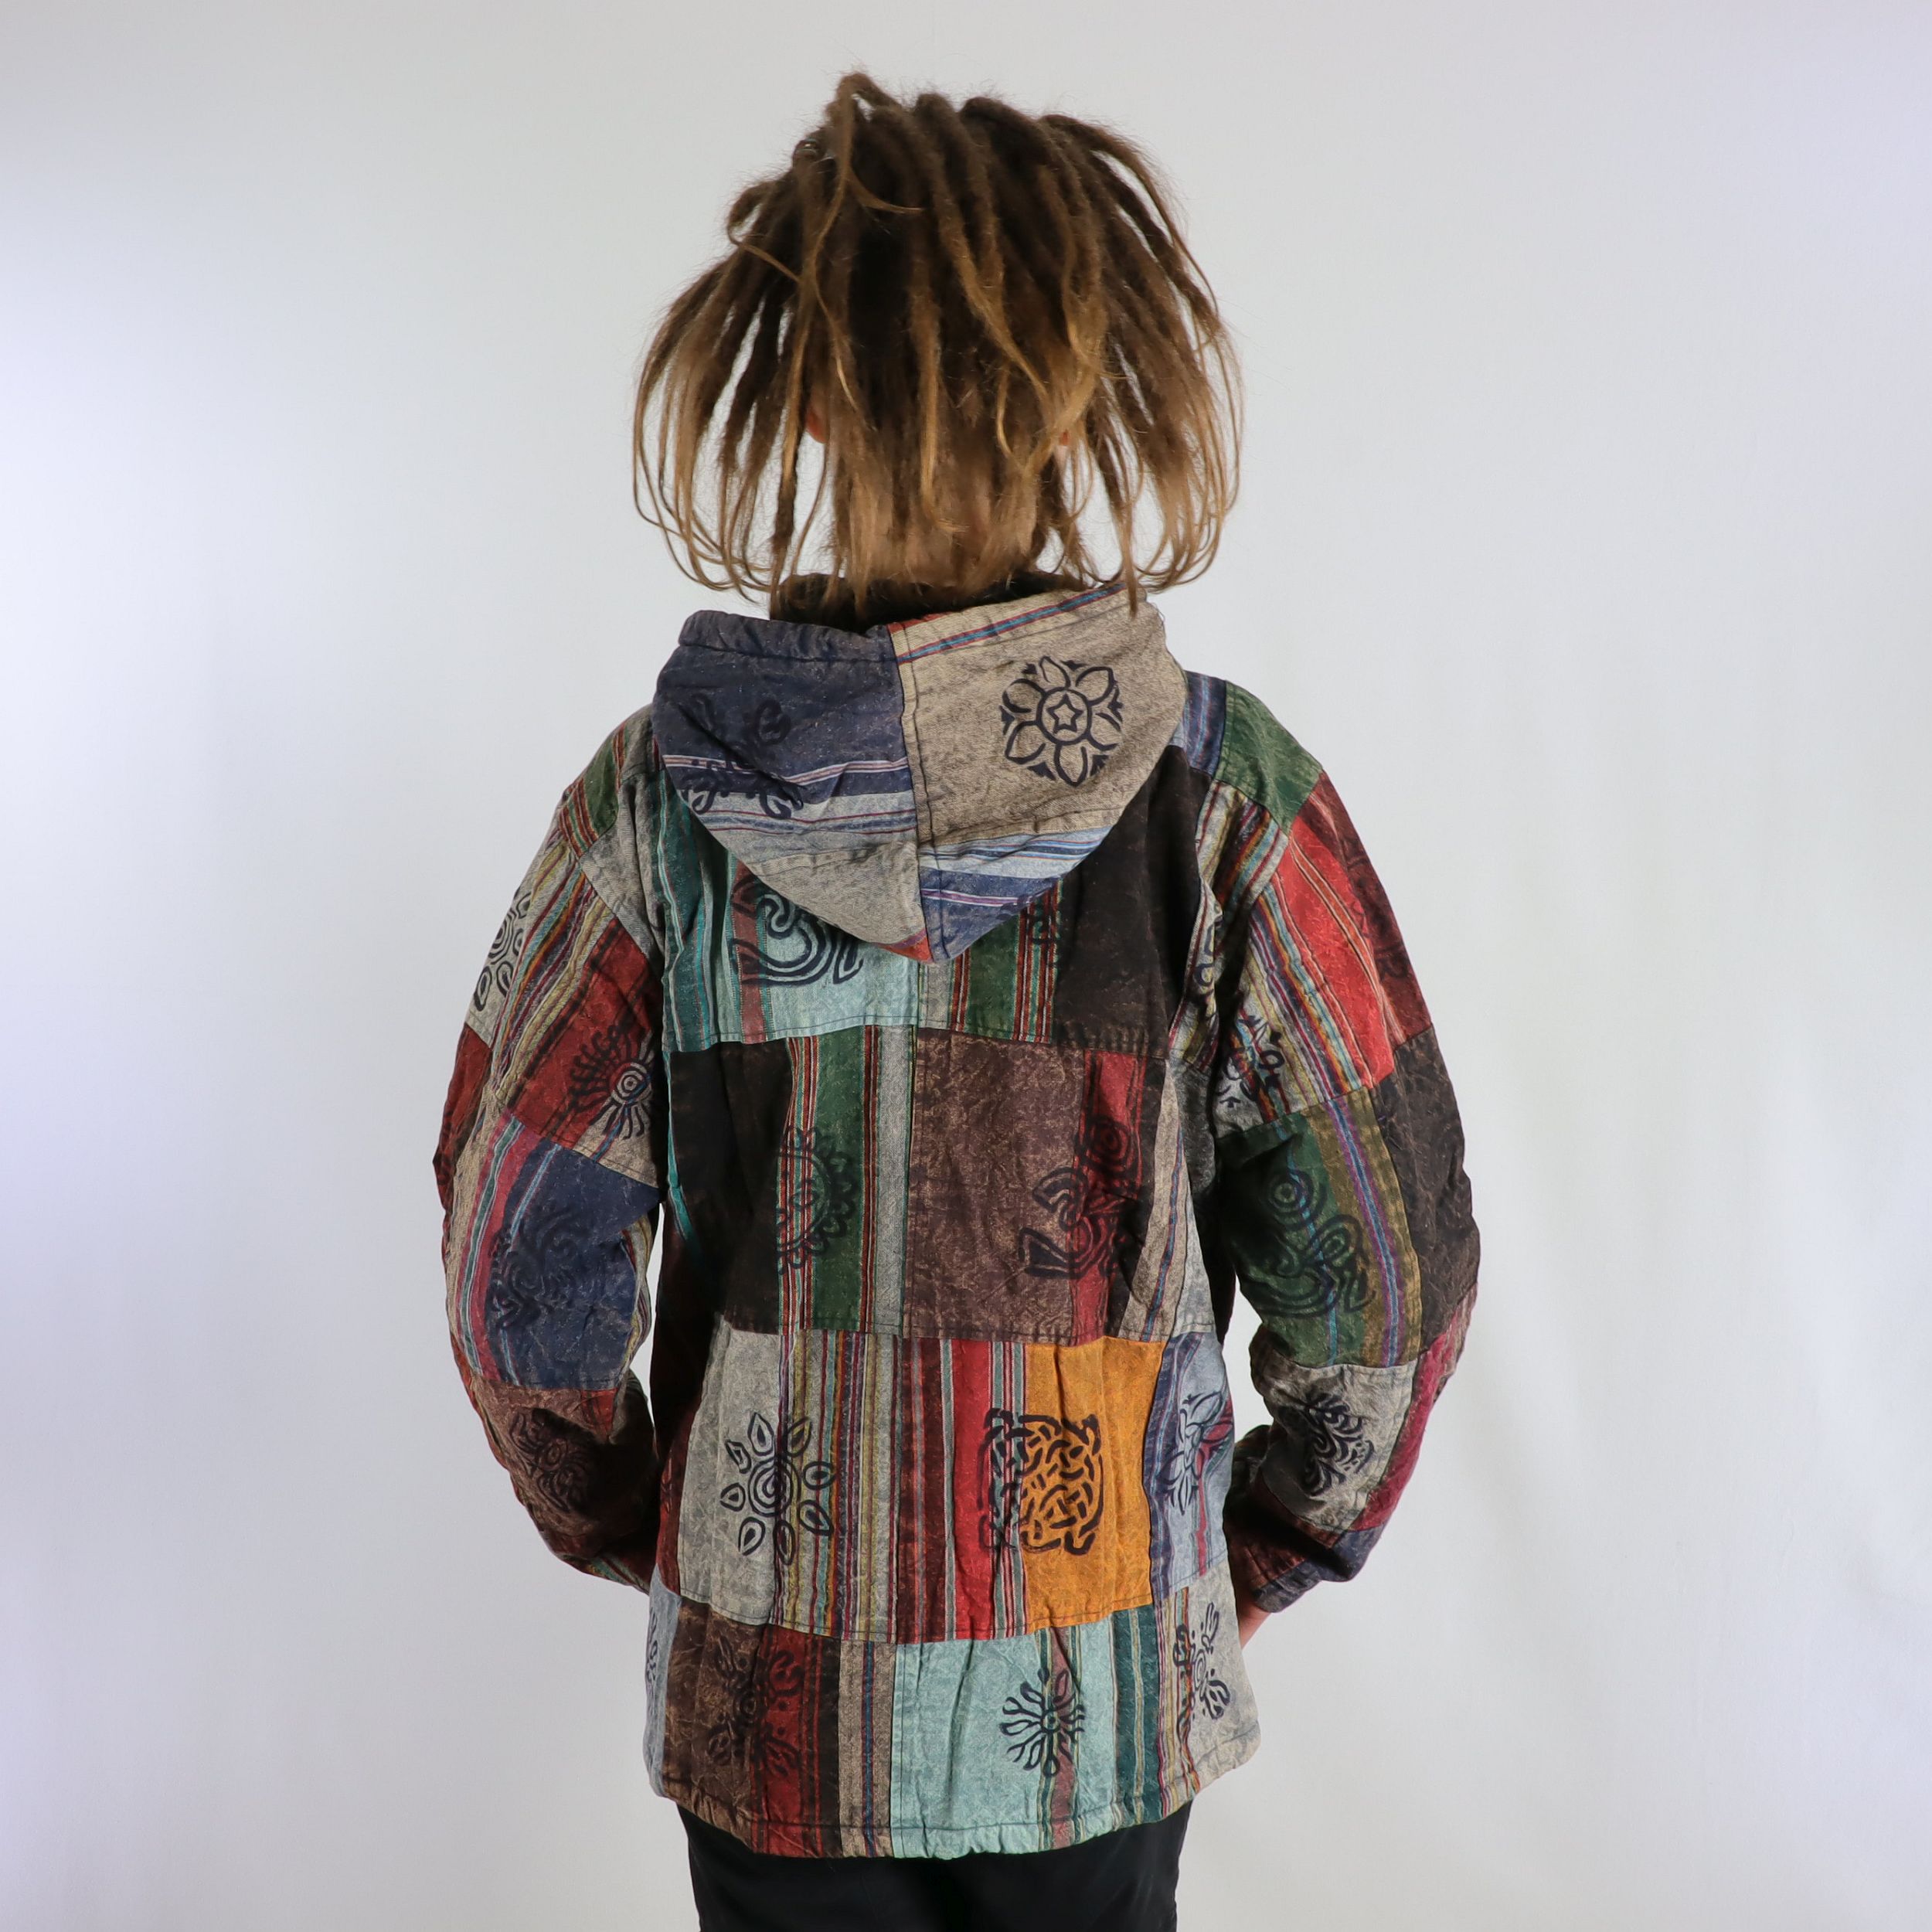 Jacke im Patchwork und Print Style - 100% Baumwolle - mit Kapuze - im Stonewash Used-Look Design - mit warmen Innenfutter - Deine angesagte Lieblingsjacke - Fair gehandelt aus Nepal